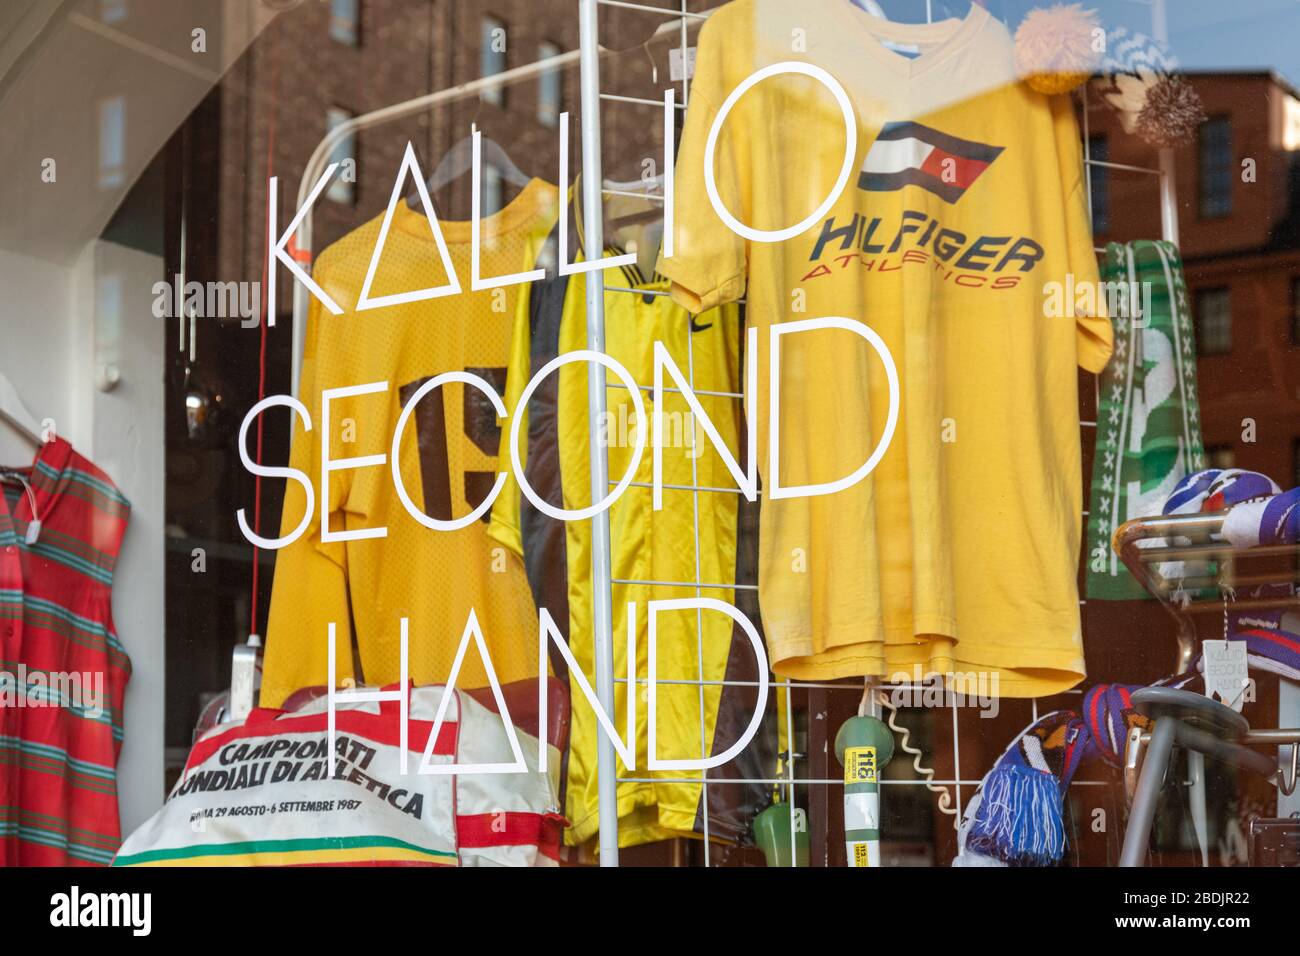 Store window of Kallio Second Hand at Hämeentie 32 in Kallio district of Helsinki, Finland Stock Photo